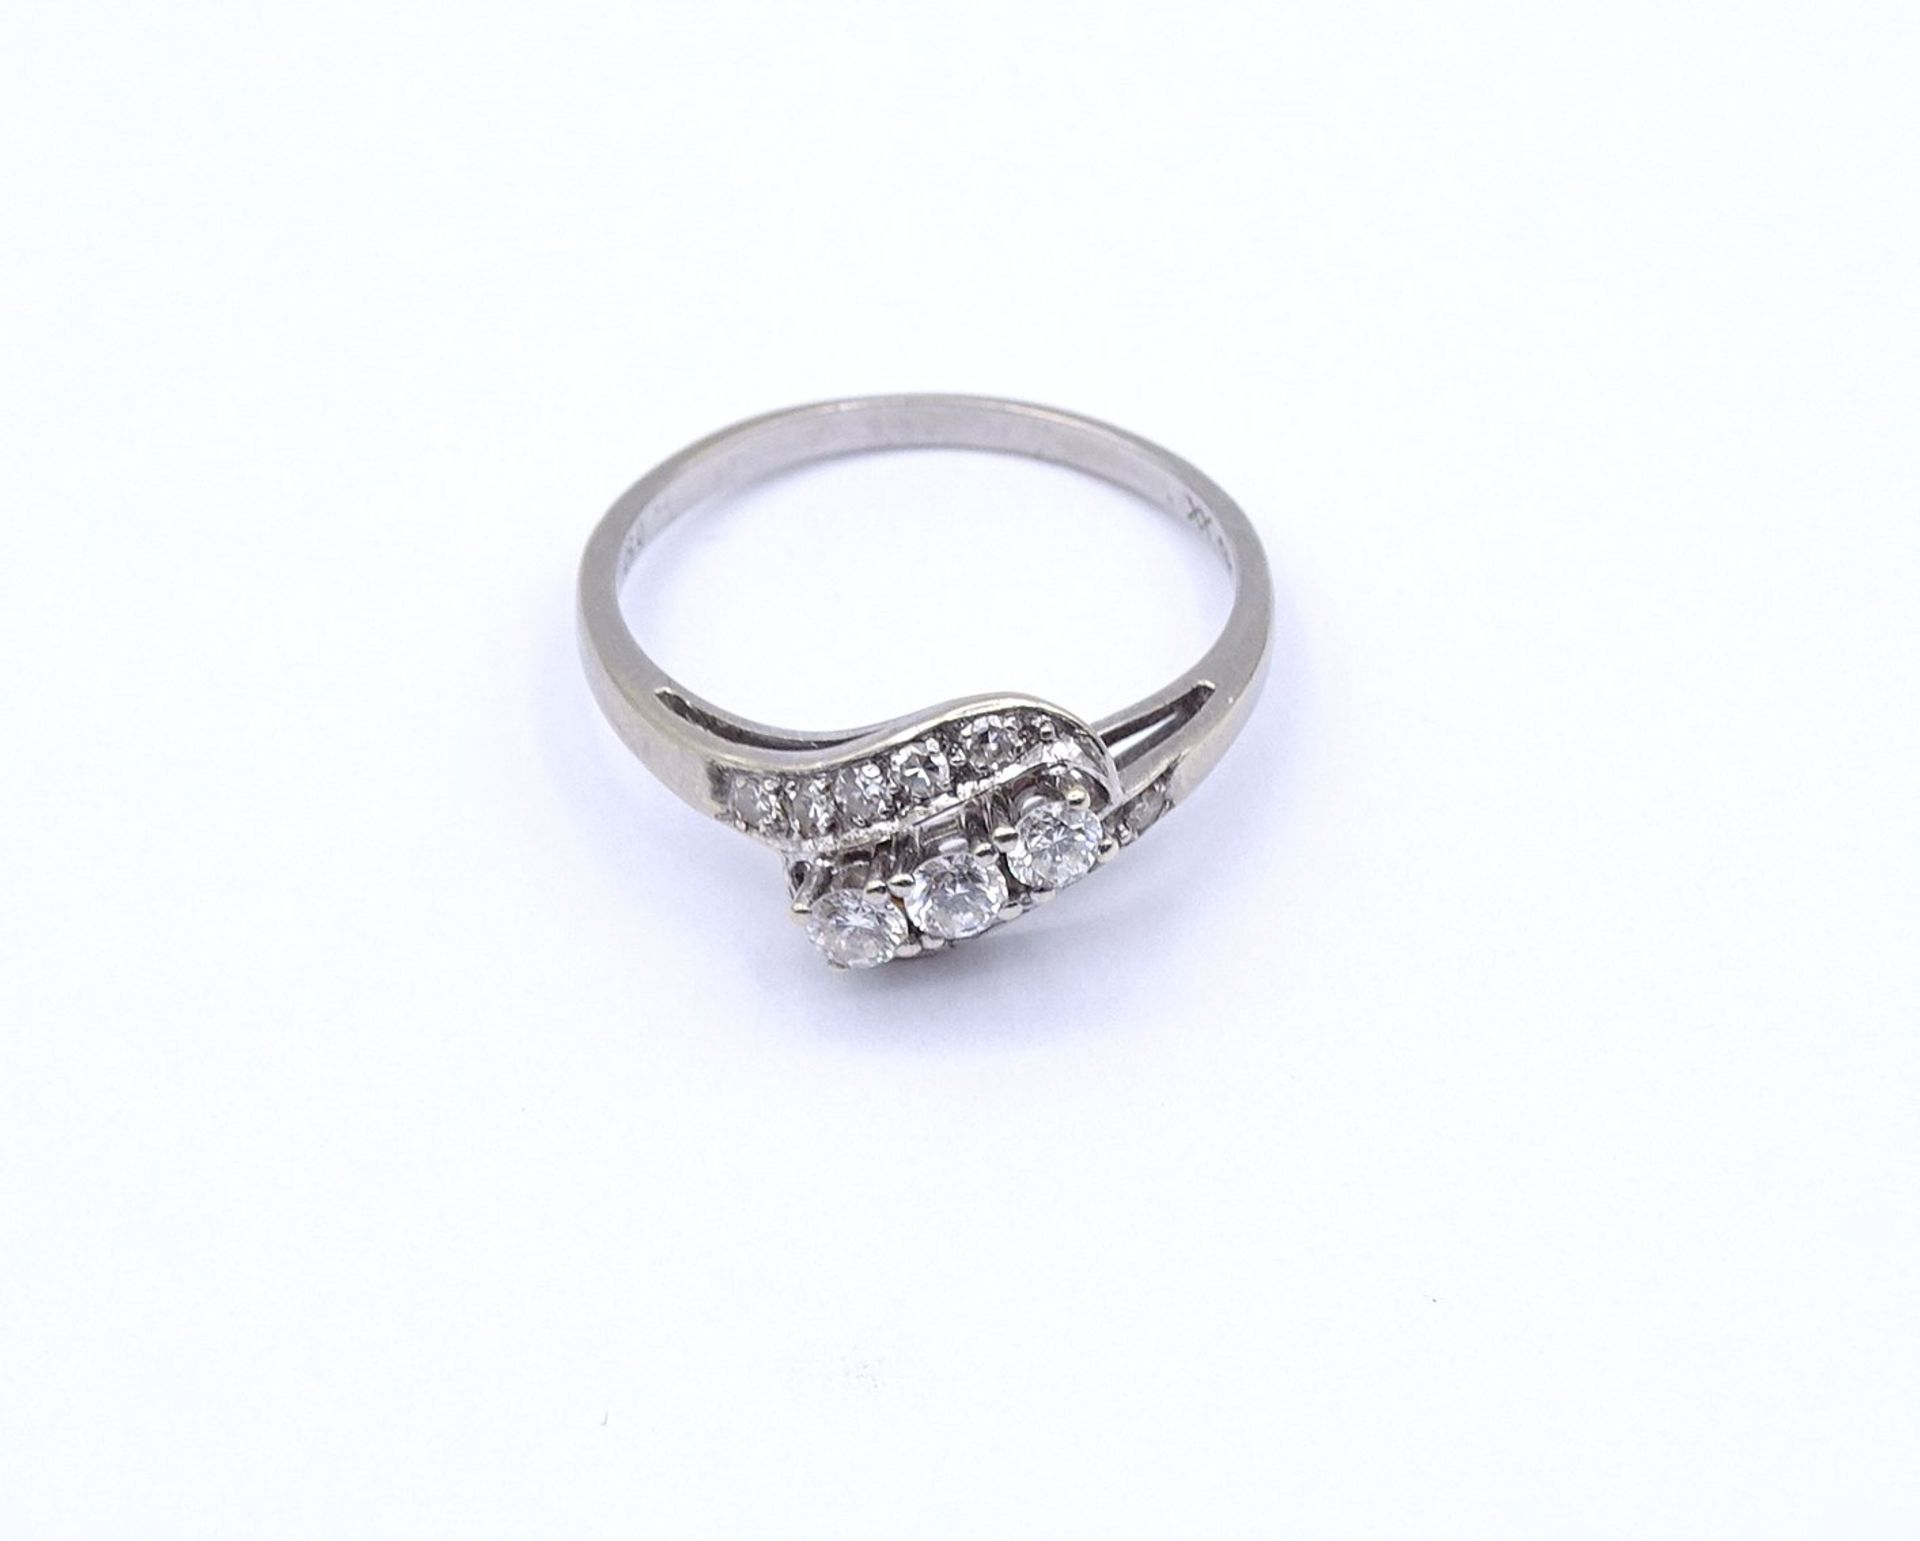 Brillant Ring WG 585/000 mit Brillanten zus. 0,50ct., 2,7g., RG 60 - Image 2 of 4